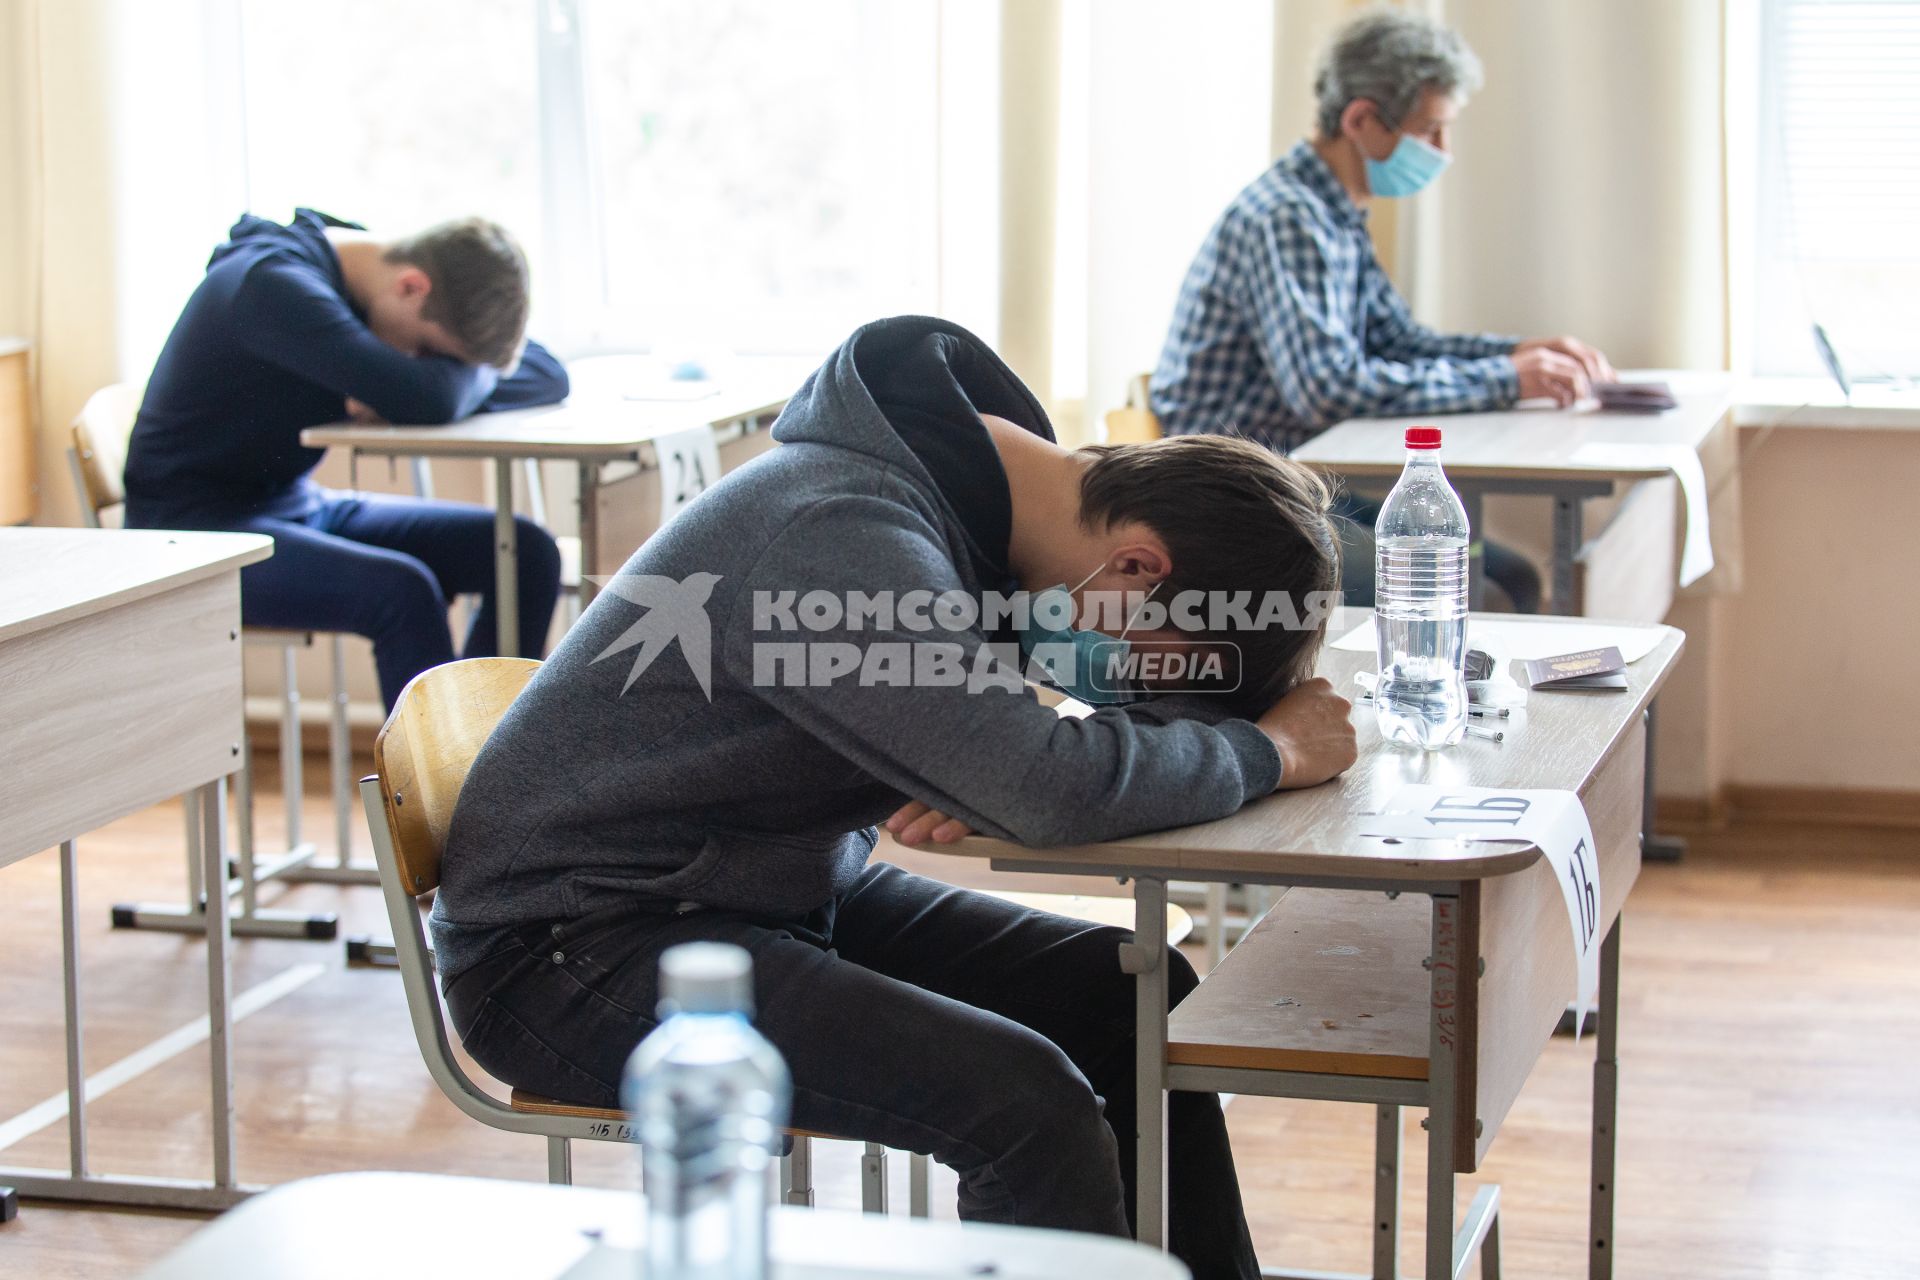 Челябинск. Ученики перед началом единого государственного экзамена (ЕГЭ) в  школе.